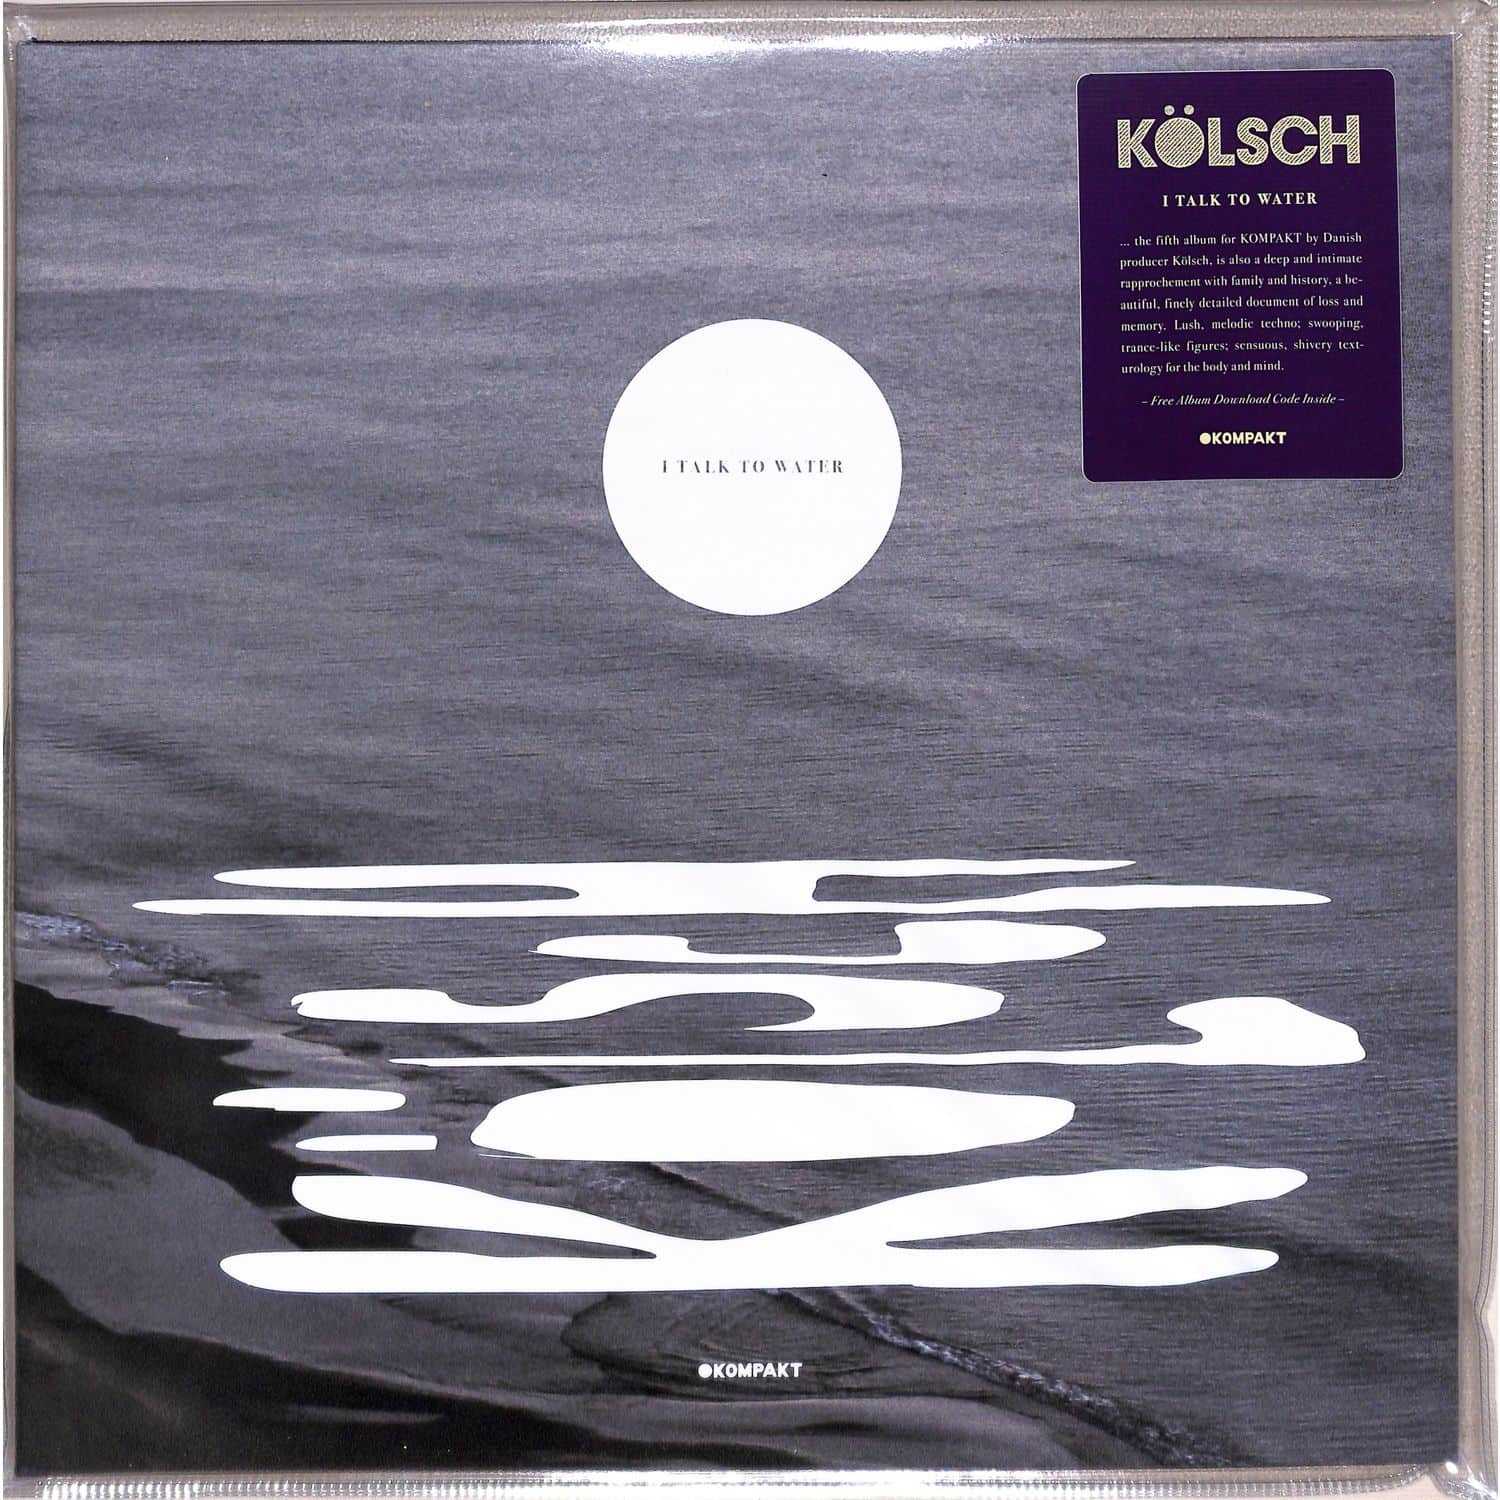 Klsch - I TALK TO WATER 